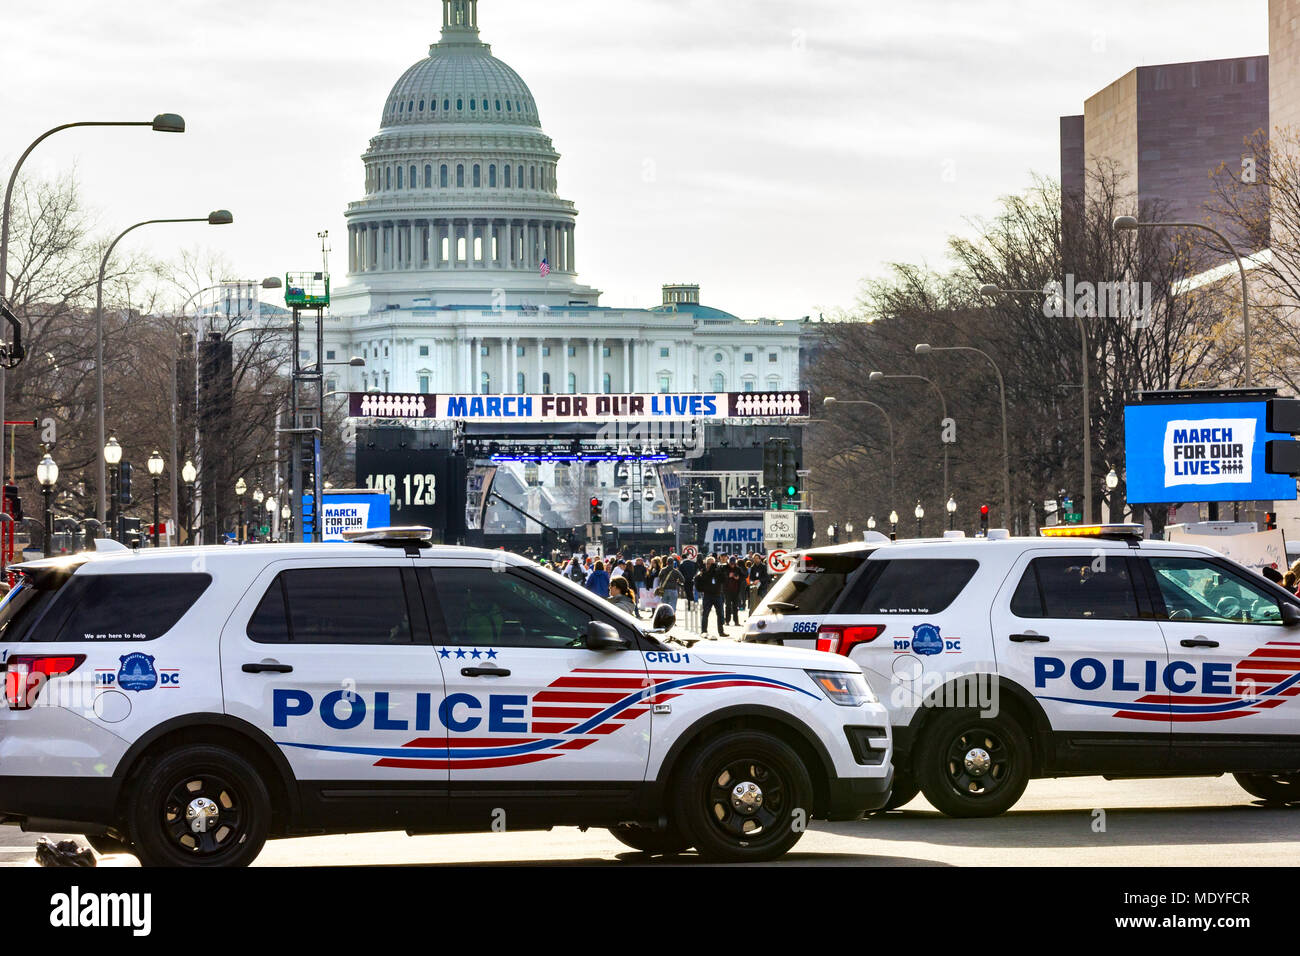 Polizei Autos, bevor die Rallye begann. März für unser Leben Kundgebung gegen Waffengewalt am 24. März 2018 in Washington, DC. Stockfoto